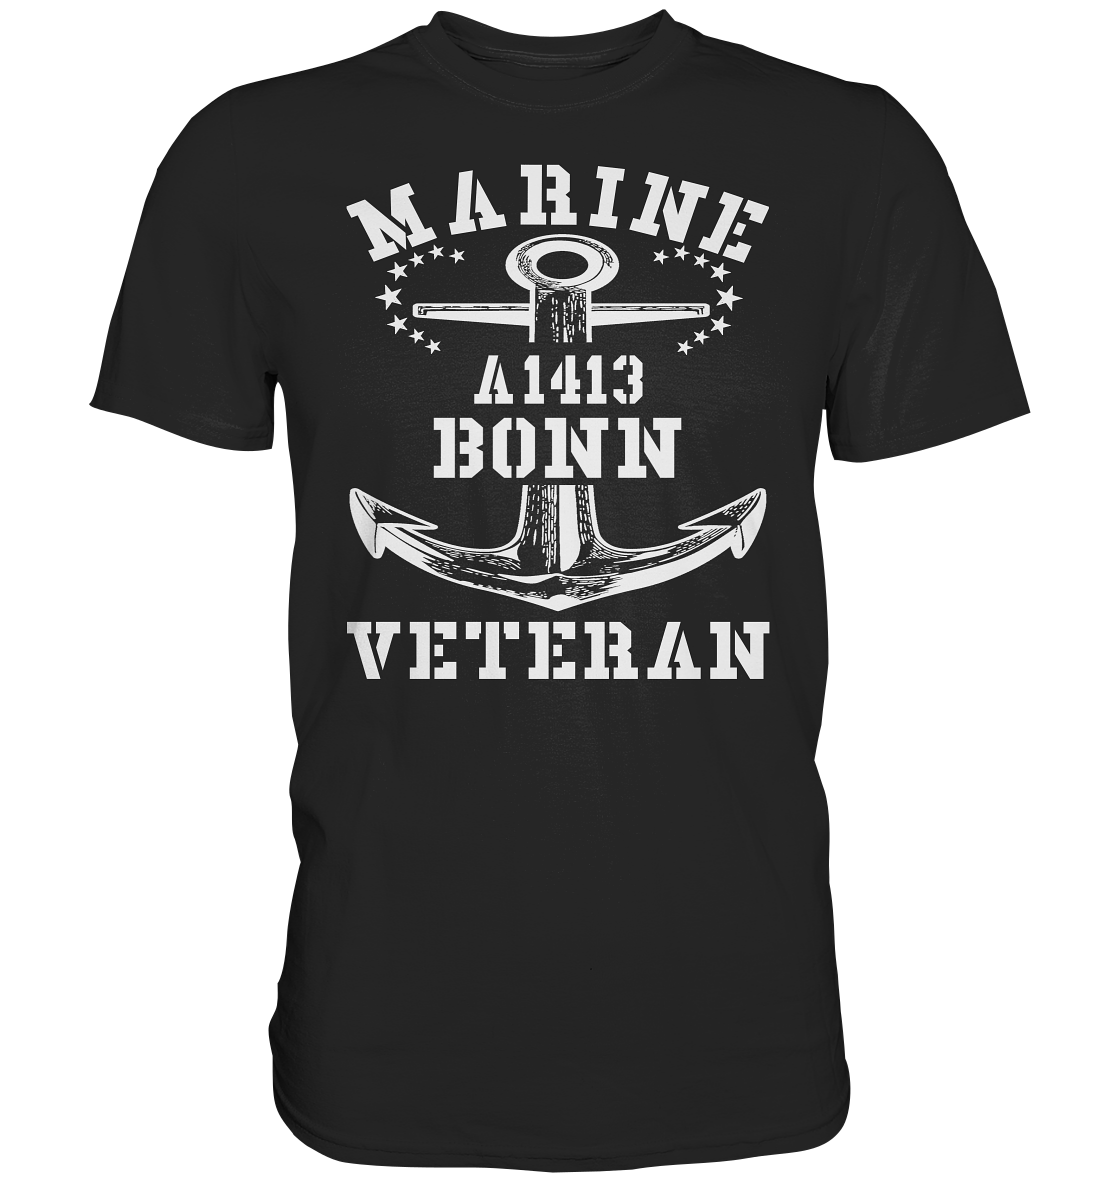 EGV A1413 BONN Marine Veteran - Premium Shirt